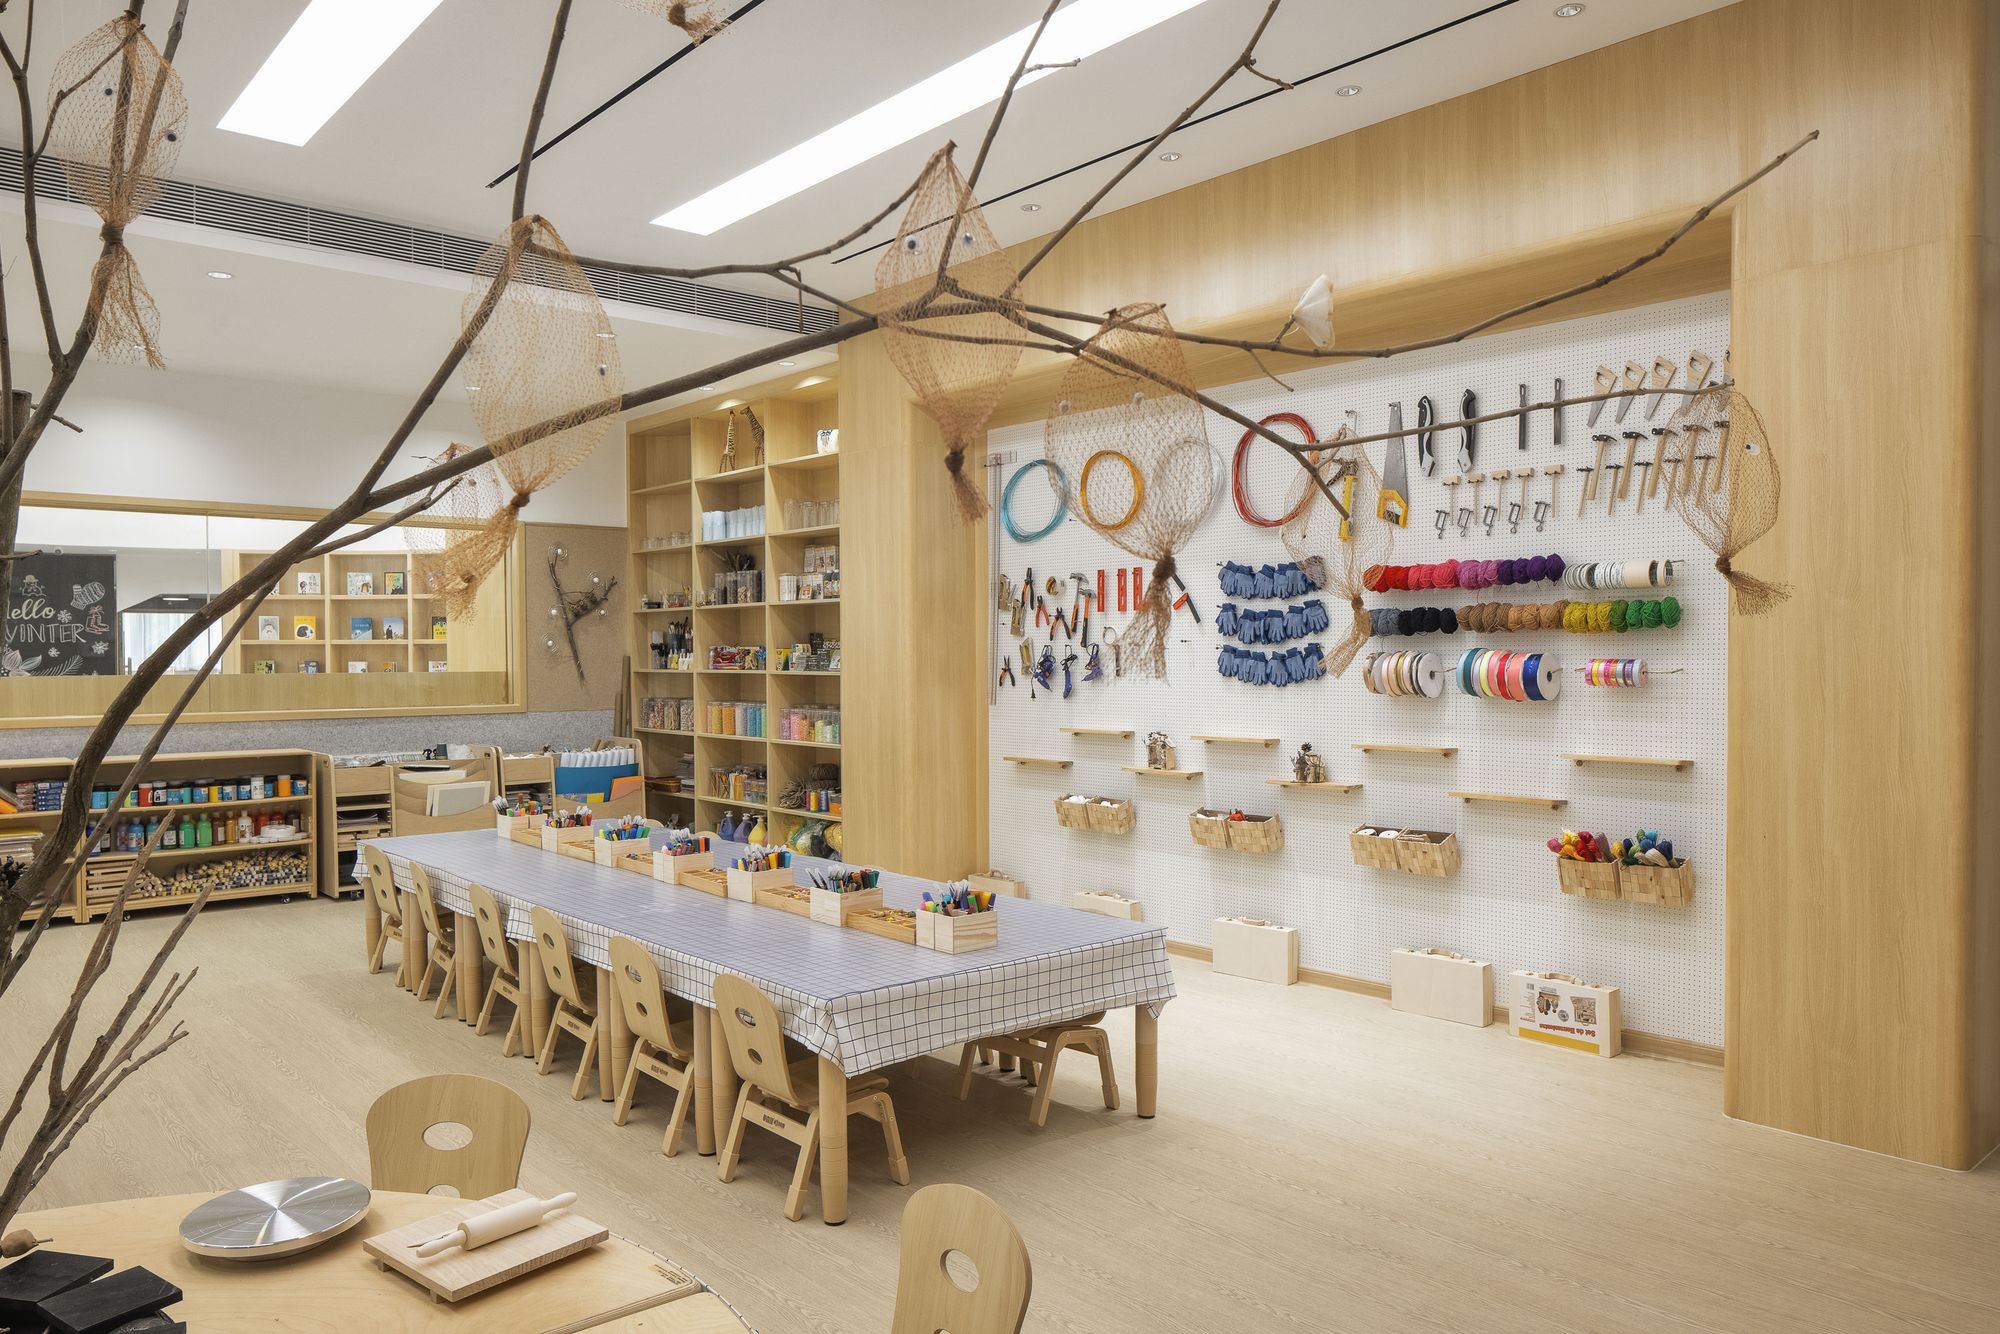 图片[14]|皇冠梦想国际幼儿园|ART-Arrakis | 建筑室内设计的创新与灵感